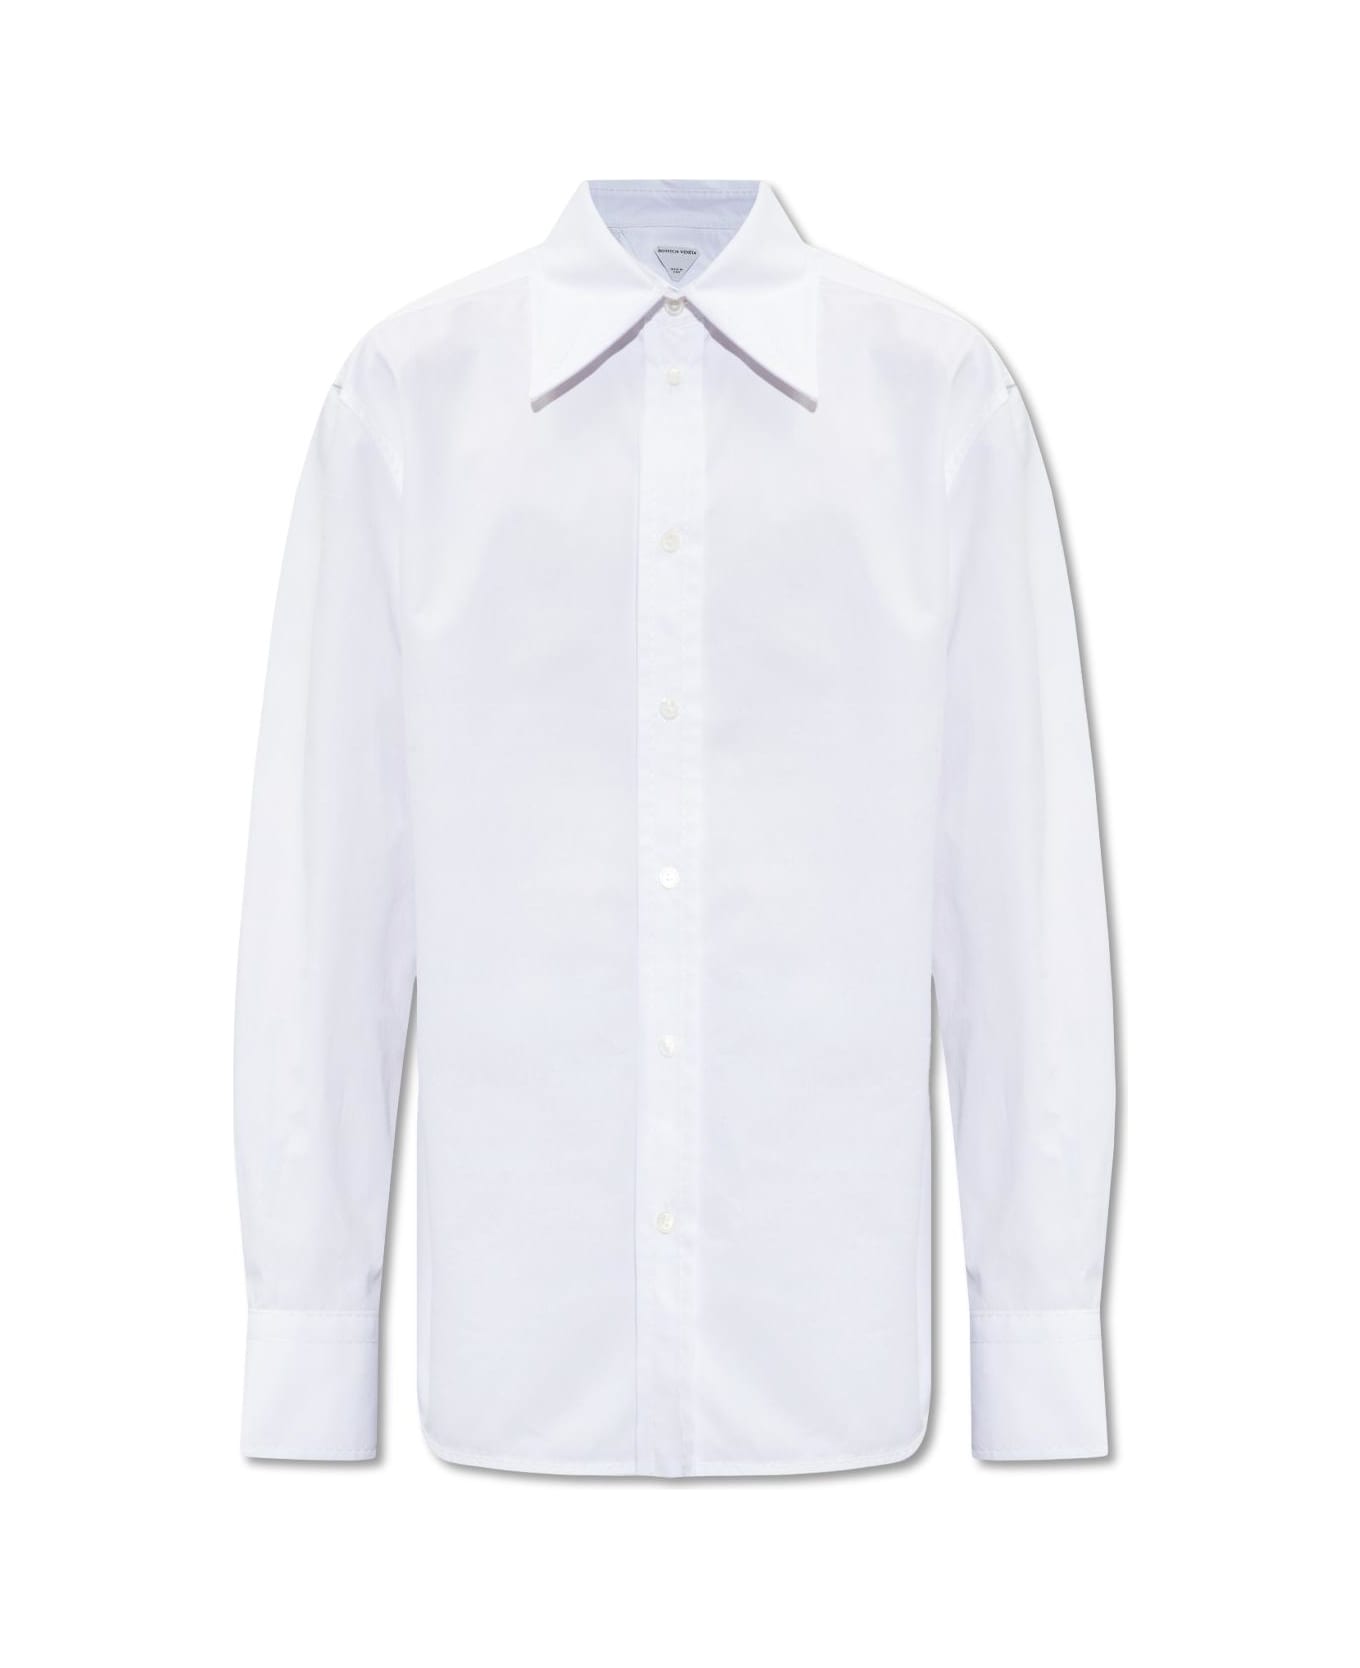 Bottega Veneta Shirt - White